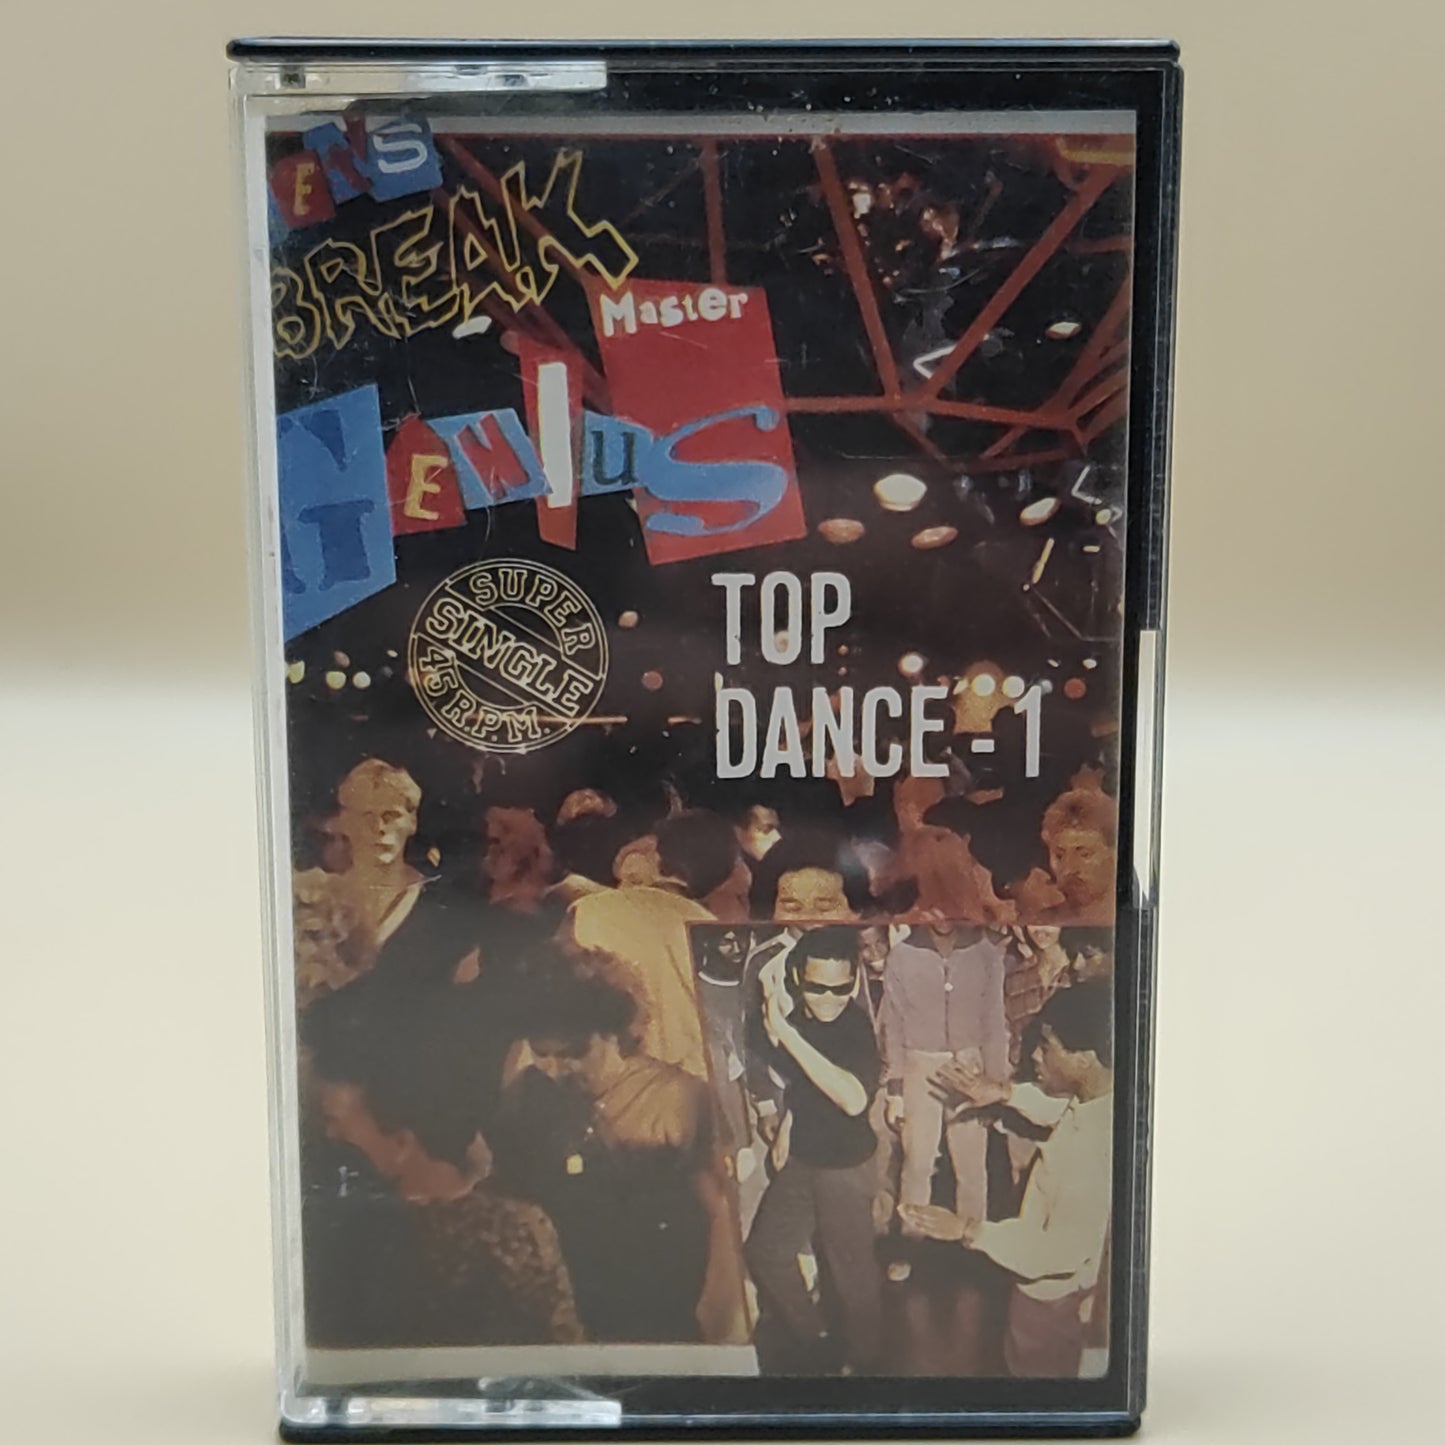 Top- Dance - 1